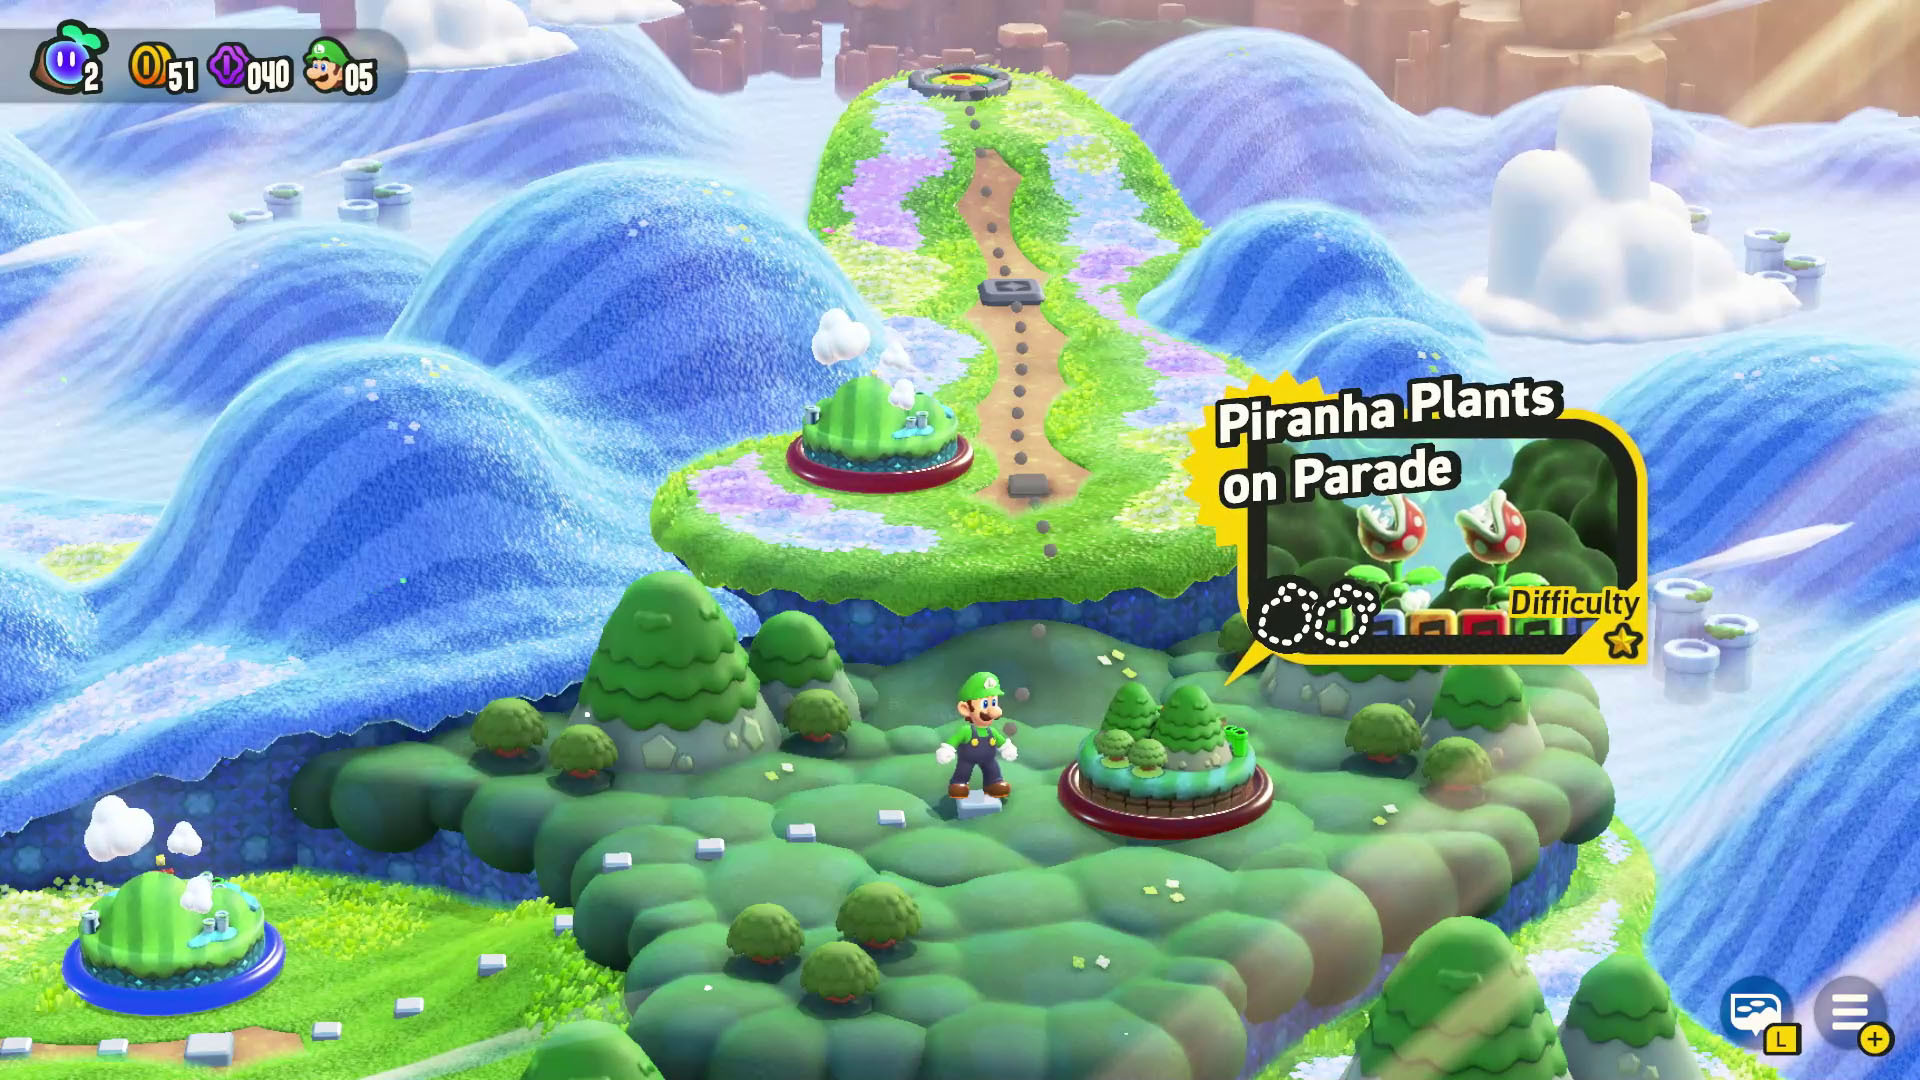 Super Mario Bros. Wonder, em 2D meio 3D, é anunciado - Drops de Jogos